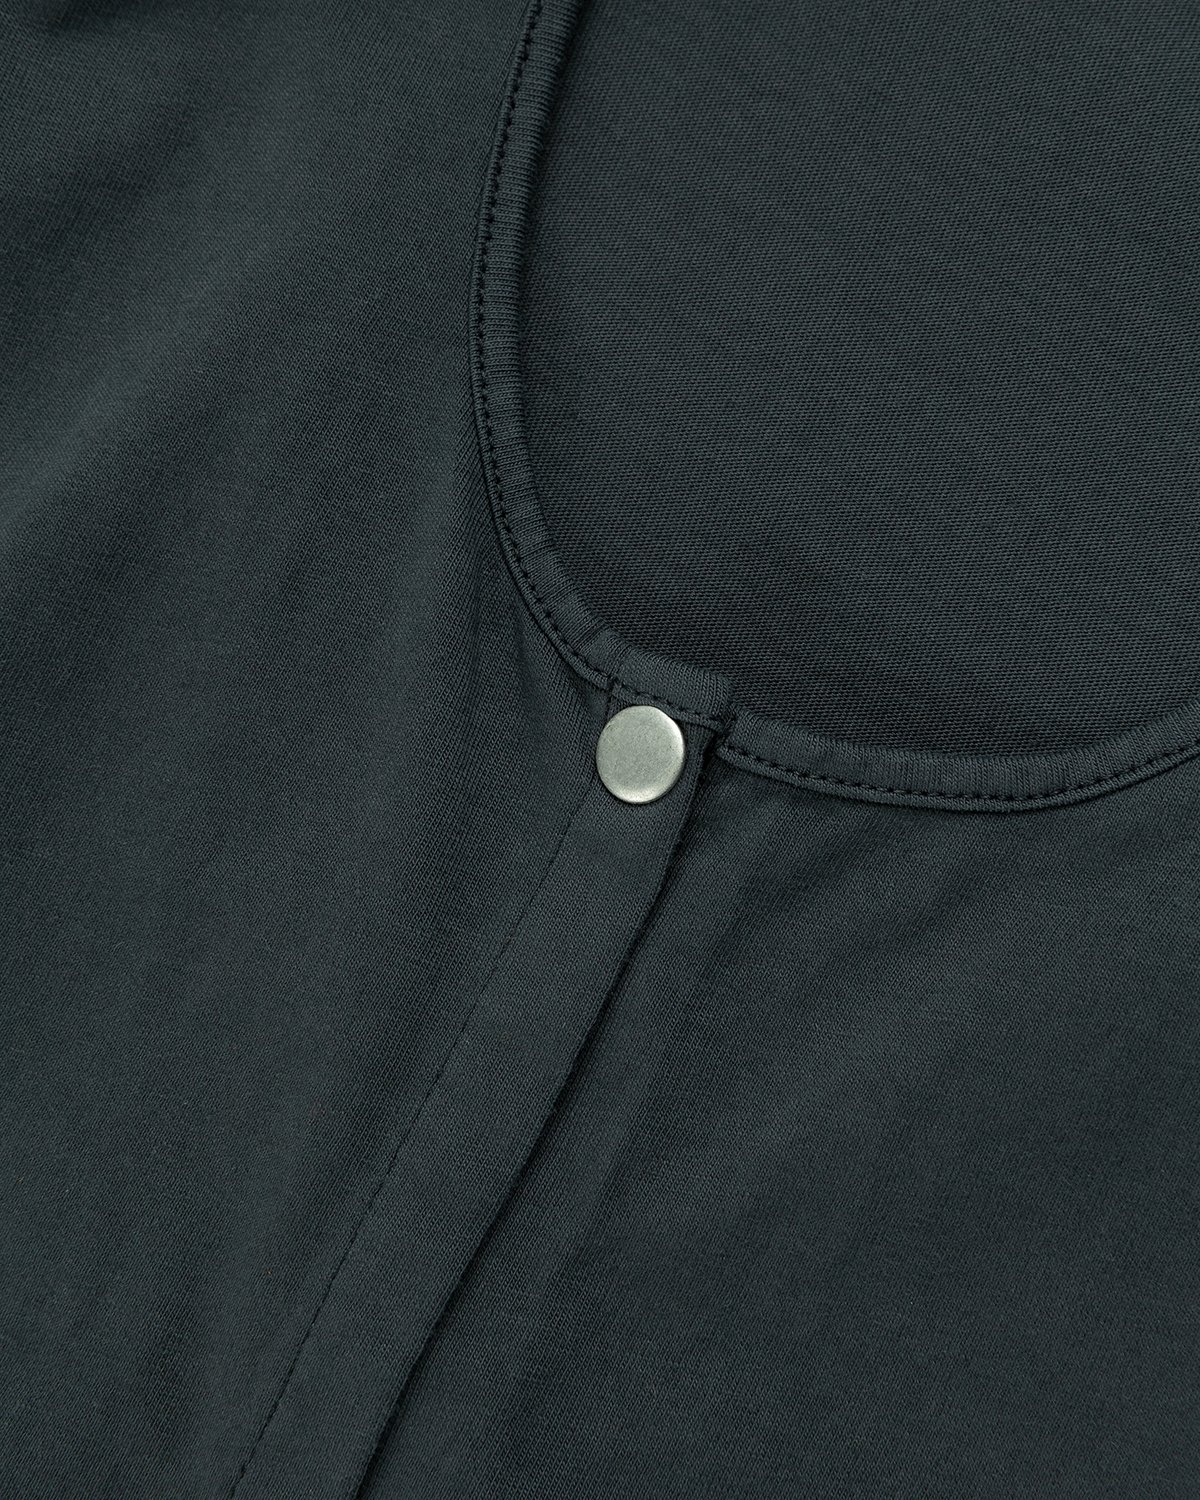 Lemaire - Sleeveless Tunic Charcoal - Clothing - Black - Image 6